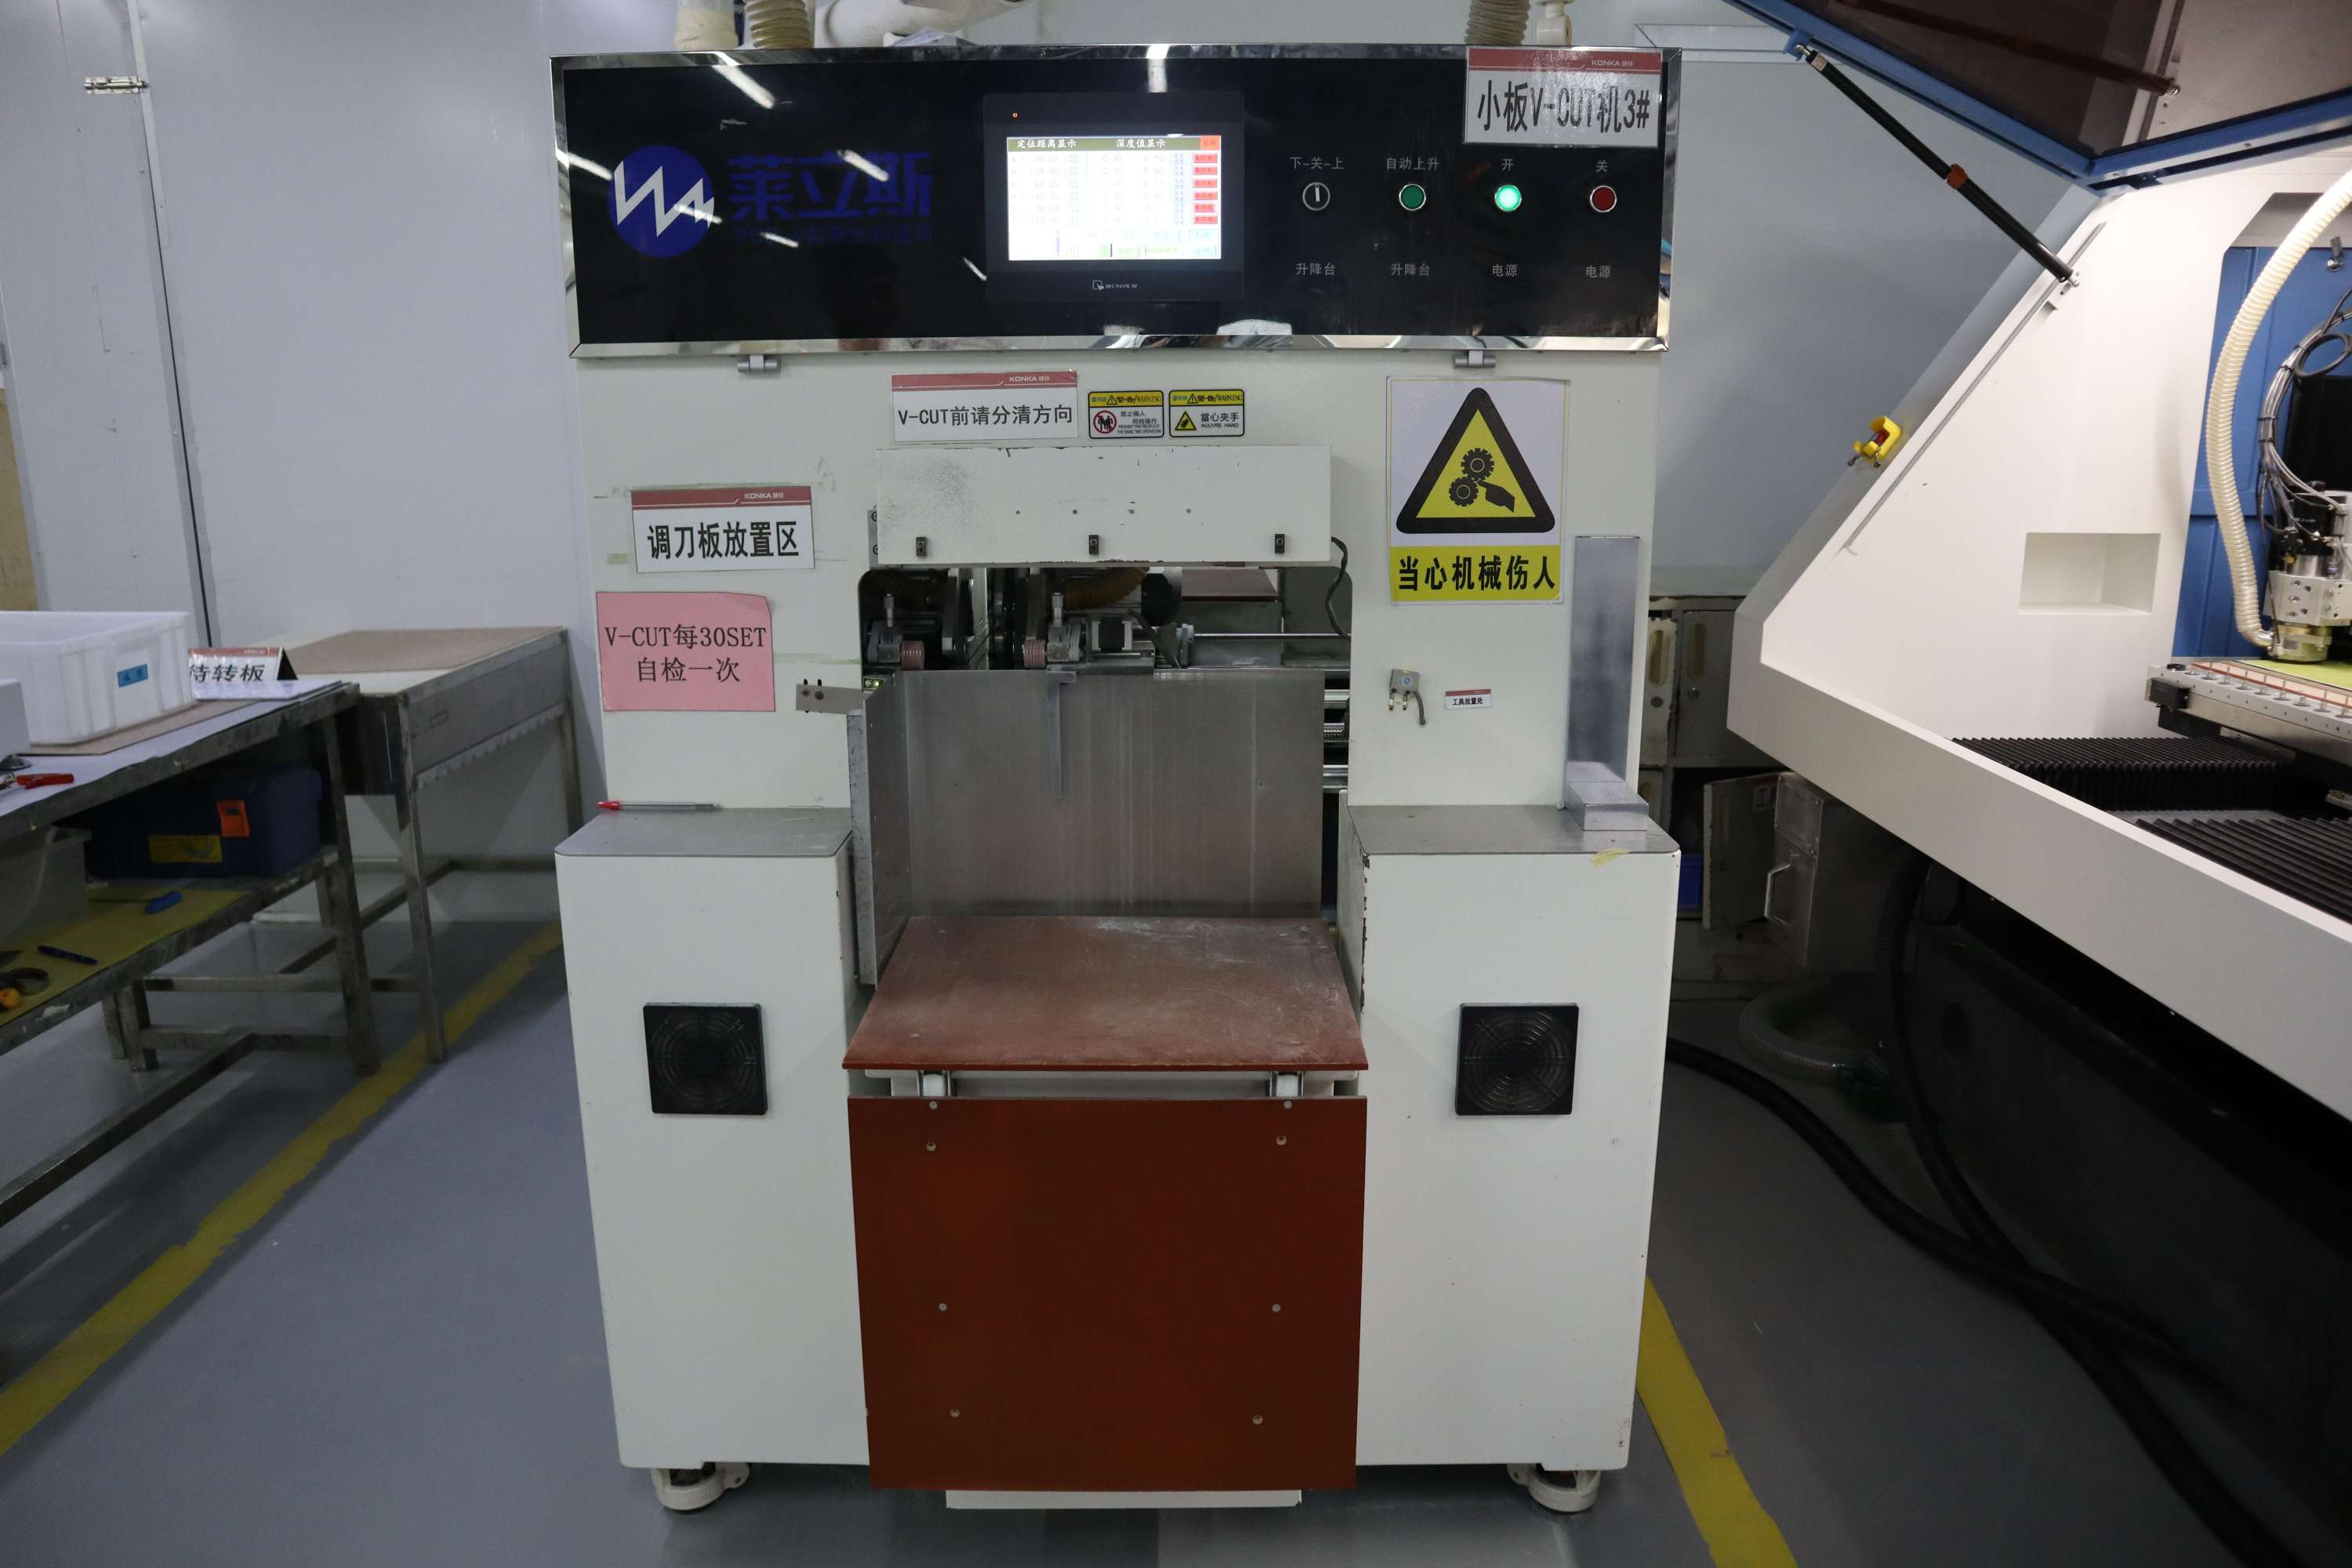 CNC V-cut machine